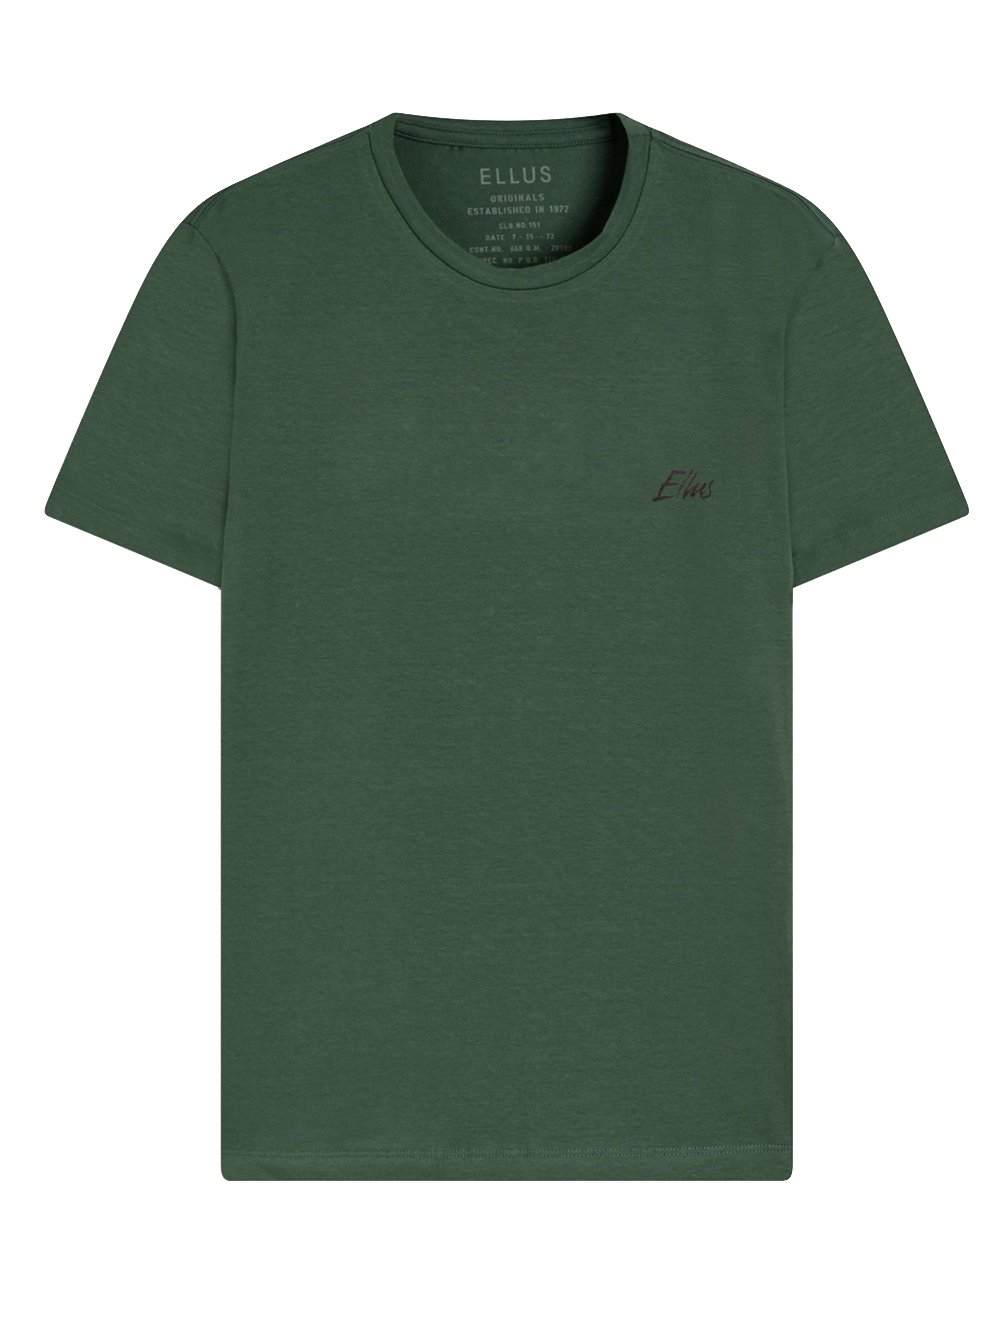 Camiseta Ellus Masculina Cotton Fine Aquarela Classic Verde Militar